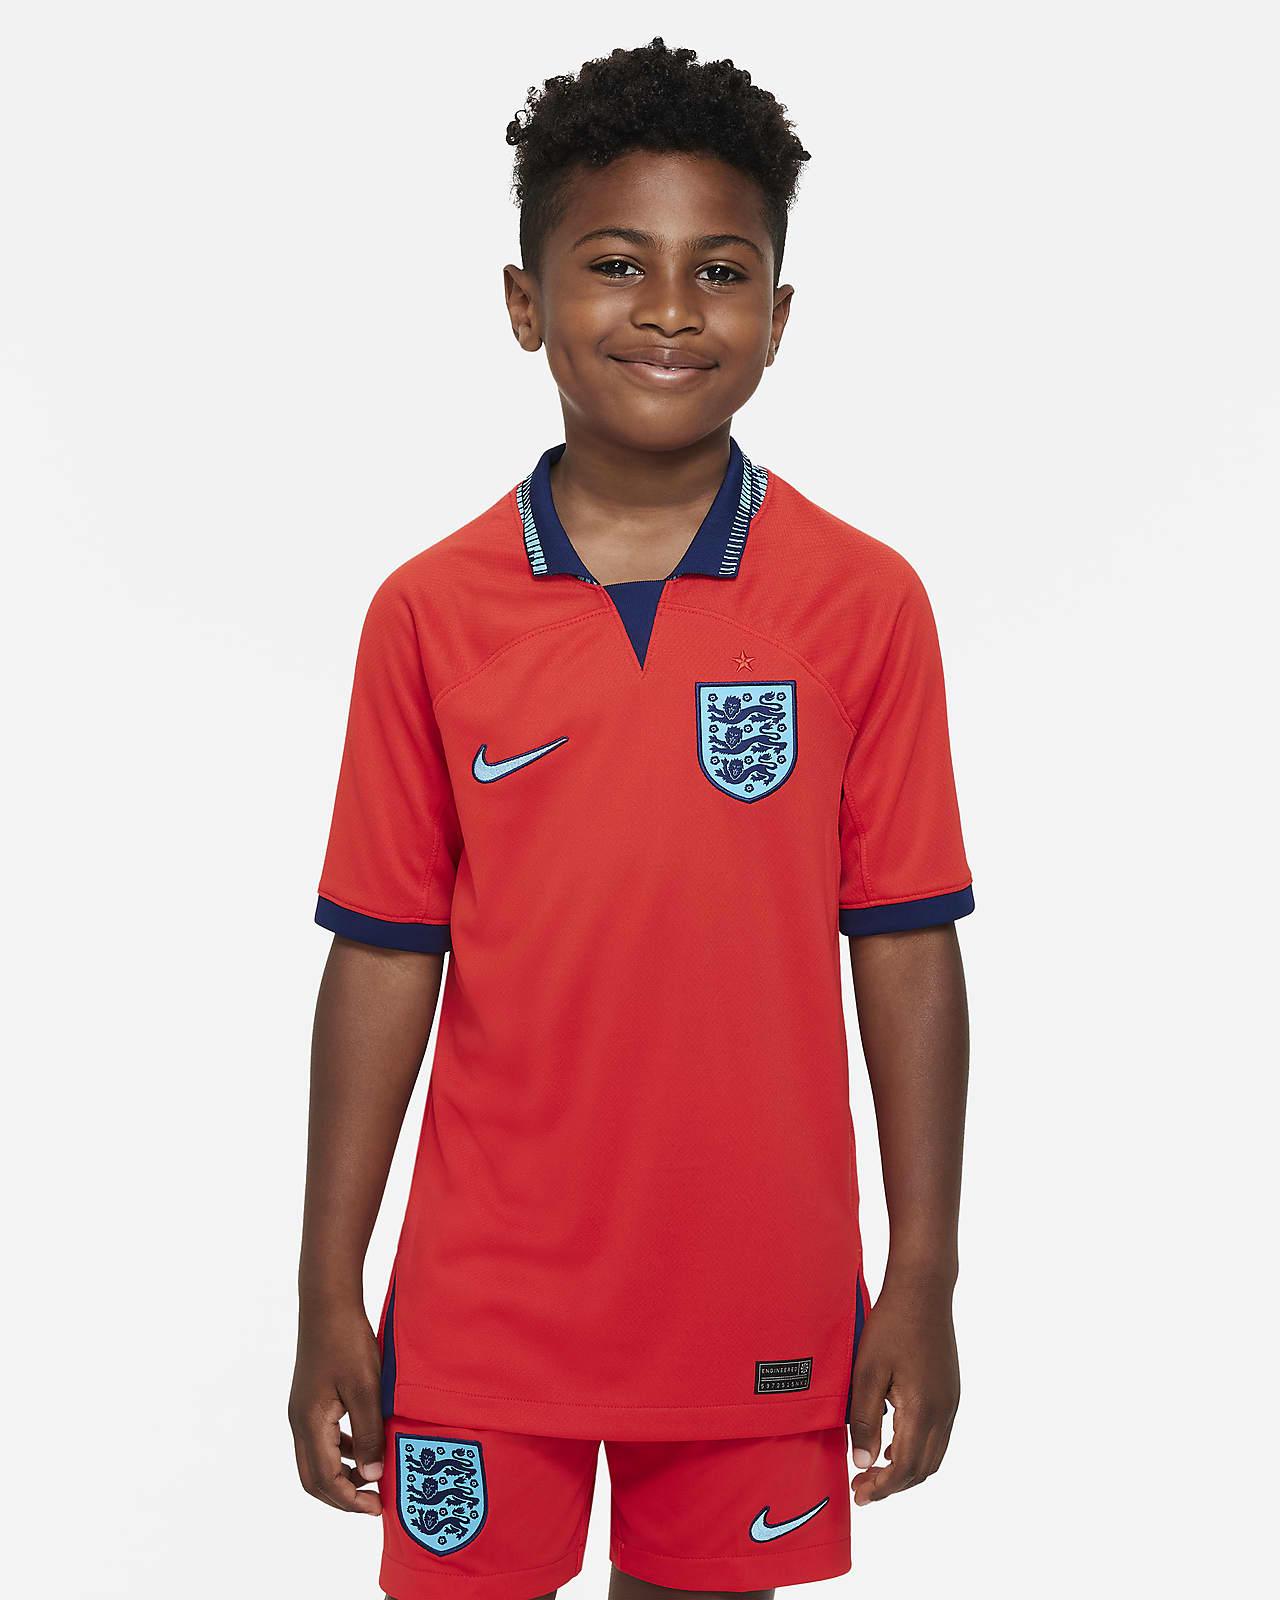 Ποδοσφαιρική φανέλα Nike Dri-FIT εκτός έδρας Αγγλία 2022/23 Stadium γιαα μεγάλα παιδιά